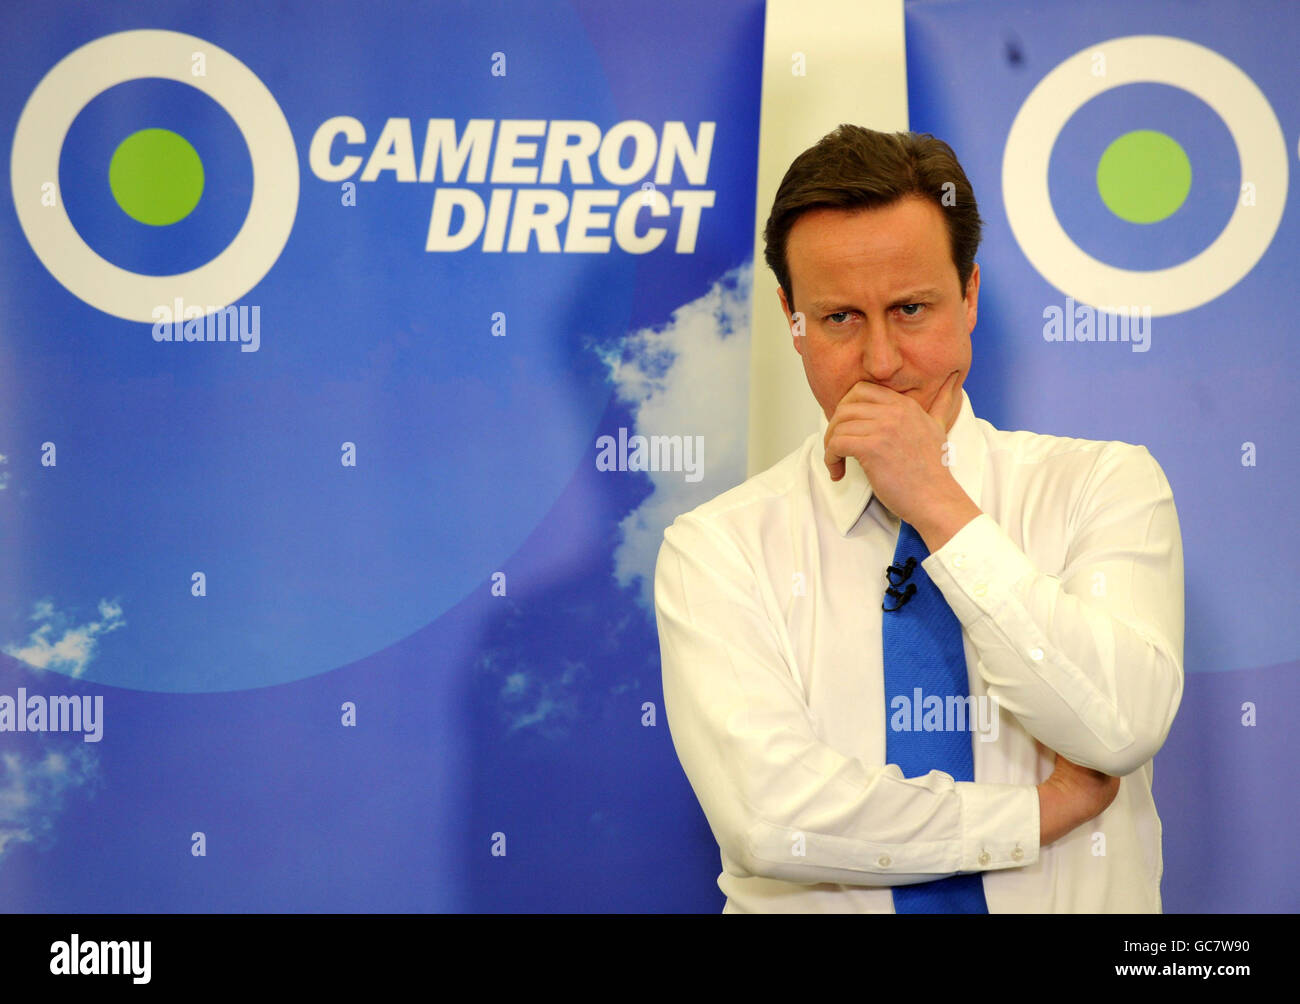 Der konservative Parteivorsitzende David Cameron hält heute Abend eine seiner regelmäßigen "Cameron Direct"-Treffen in Leamington Spa ab, bei denen die Öffentlichkeit eingeladen wird, ihn zu einem beliebigen Thema zu erfragen. Stockfoto